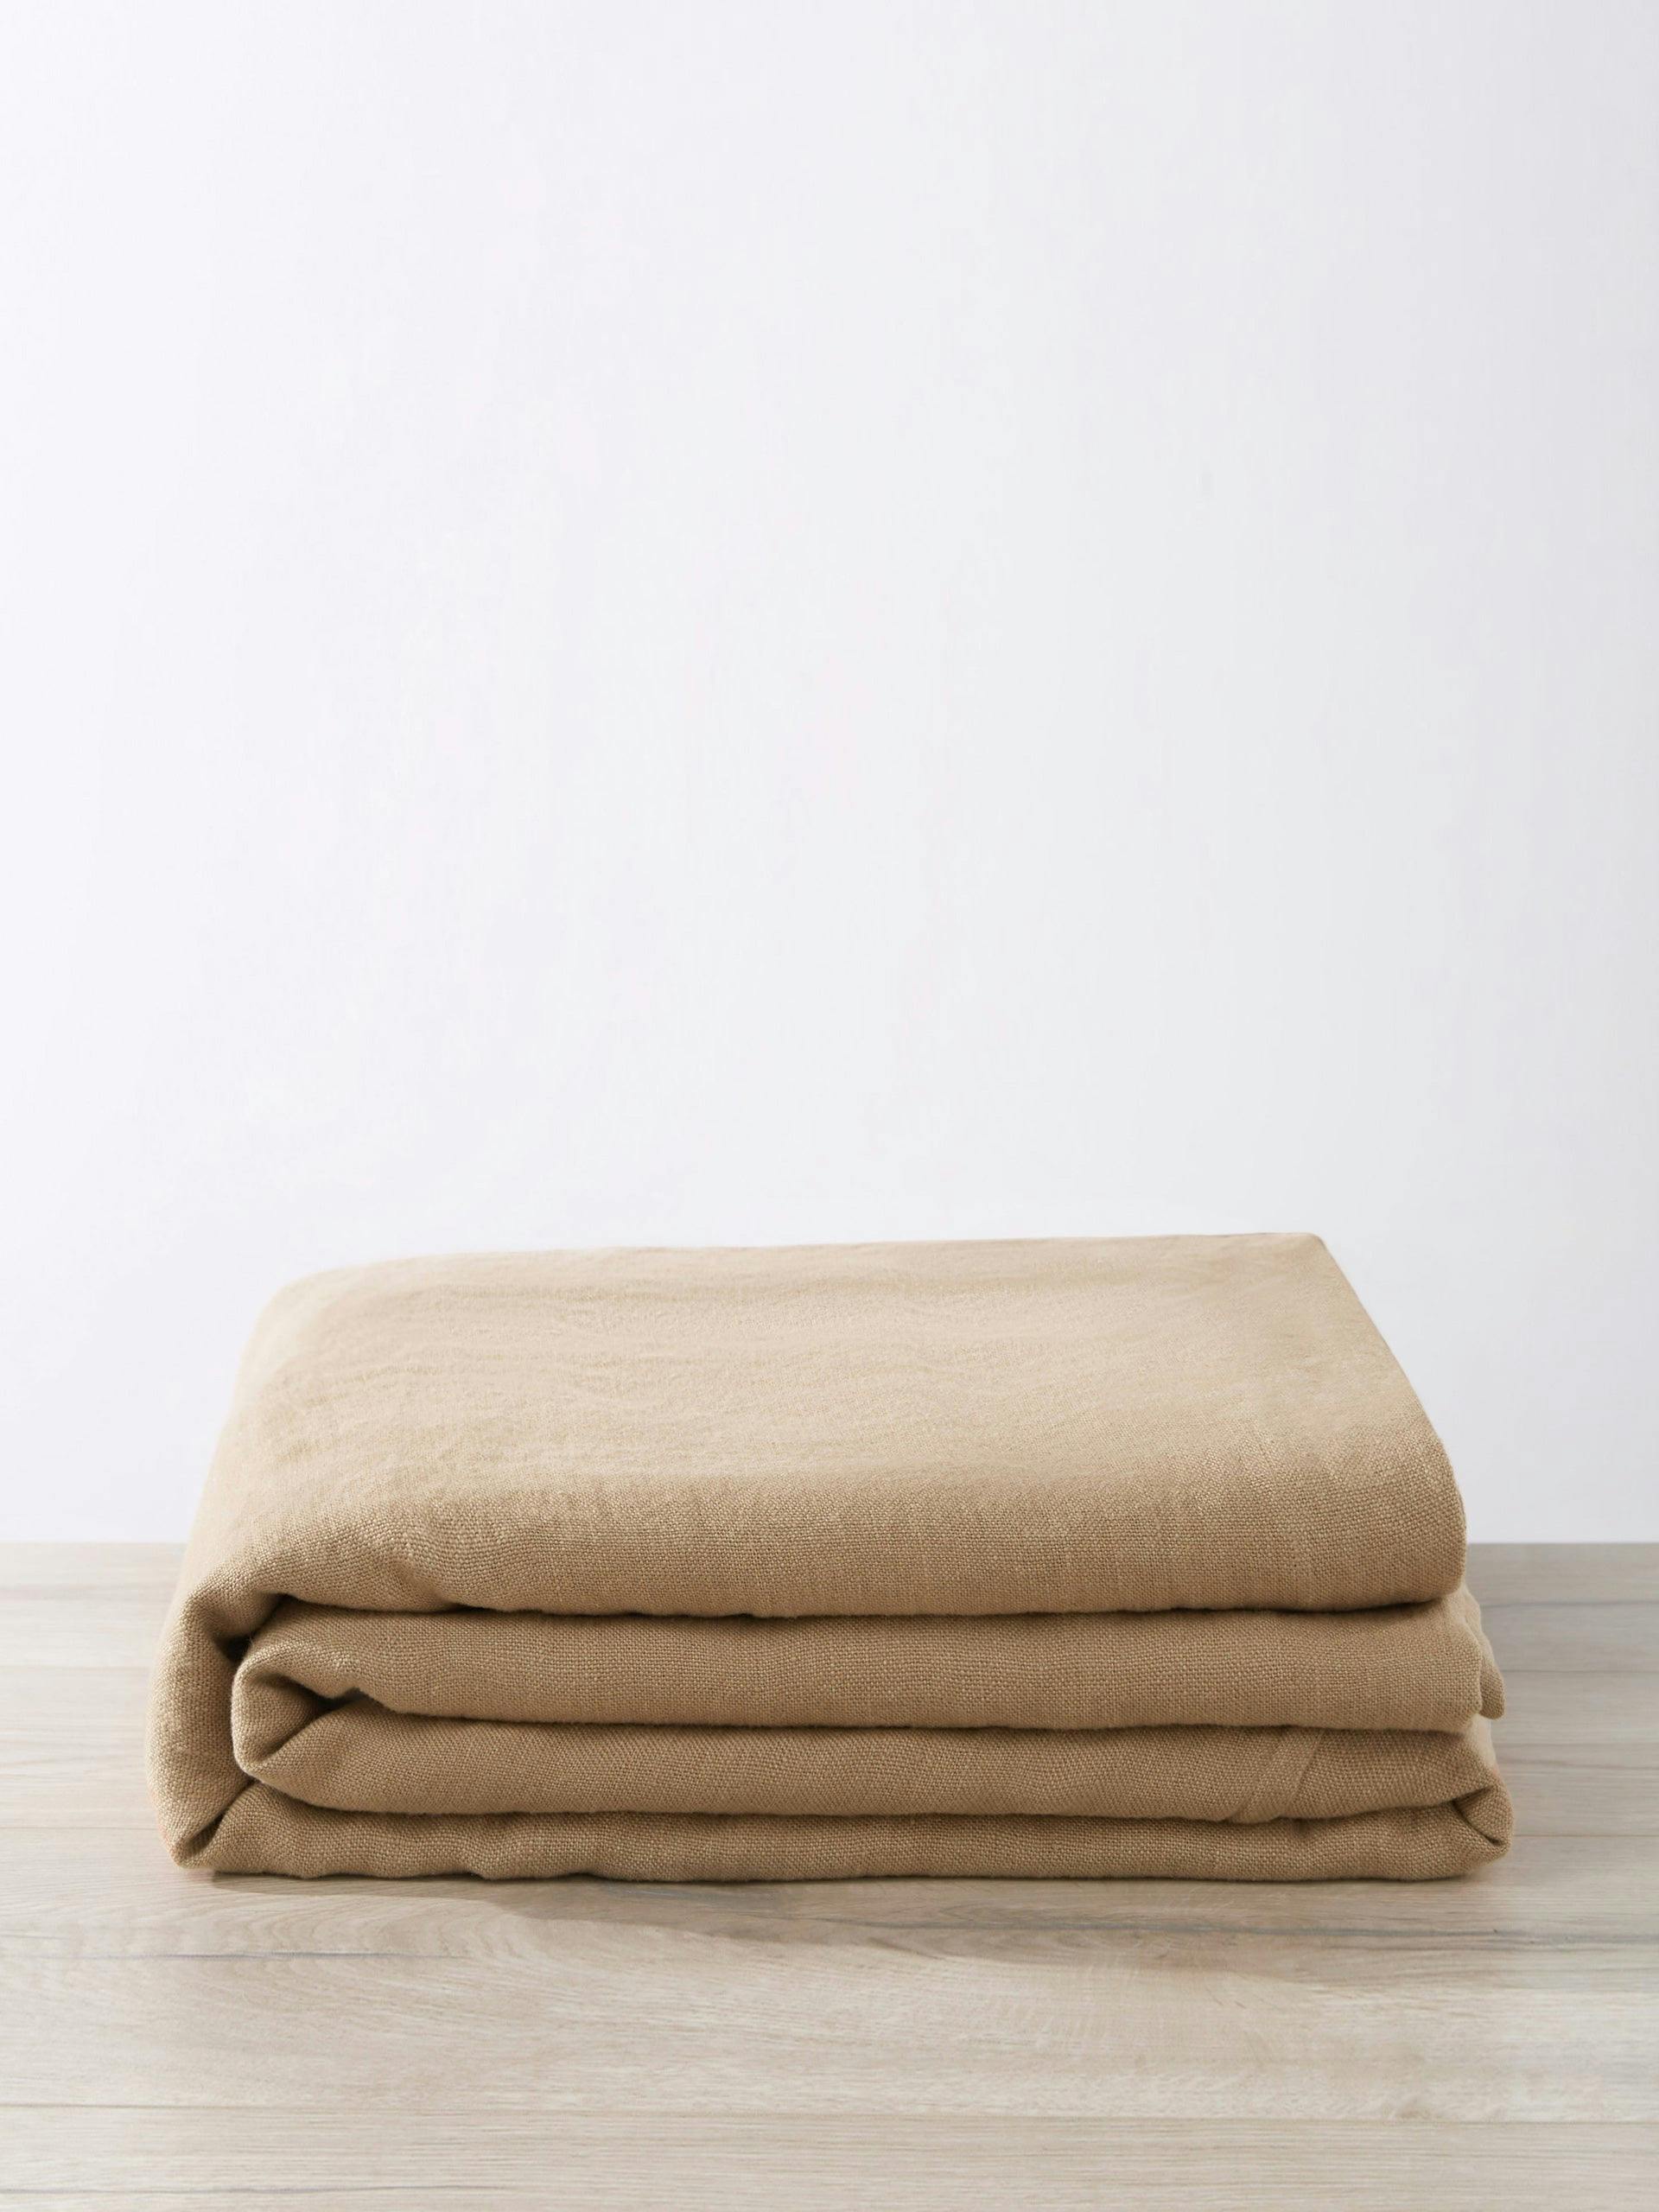 Heavyweight Linen bedcover, sand